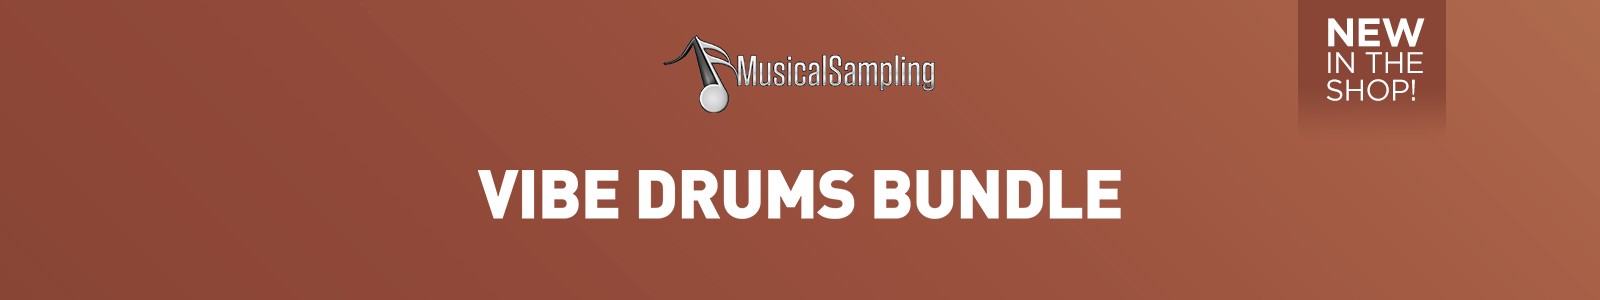 Vibe Drums Bundle by MusicalSampling